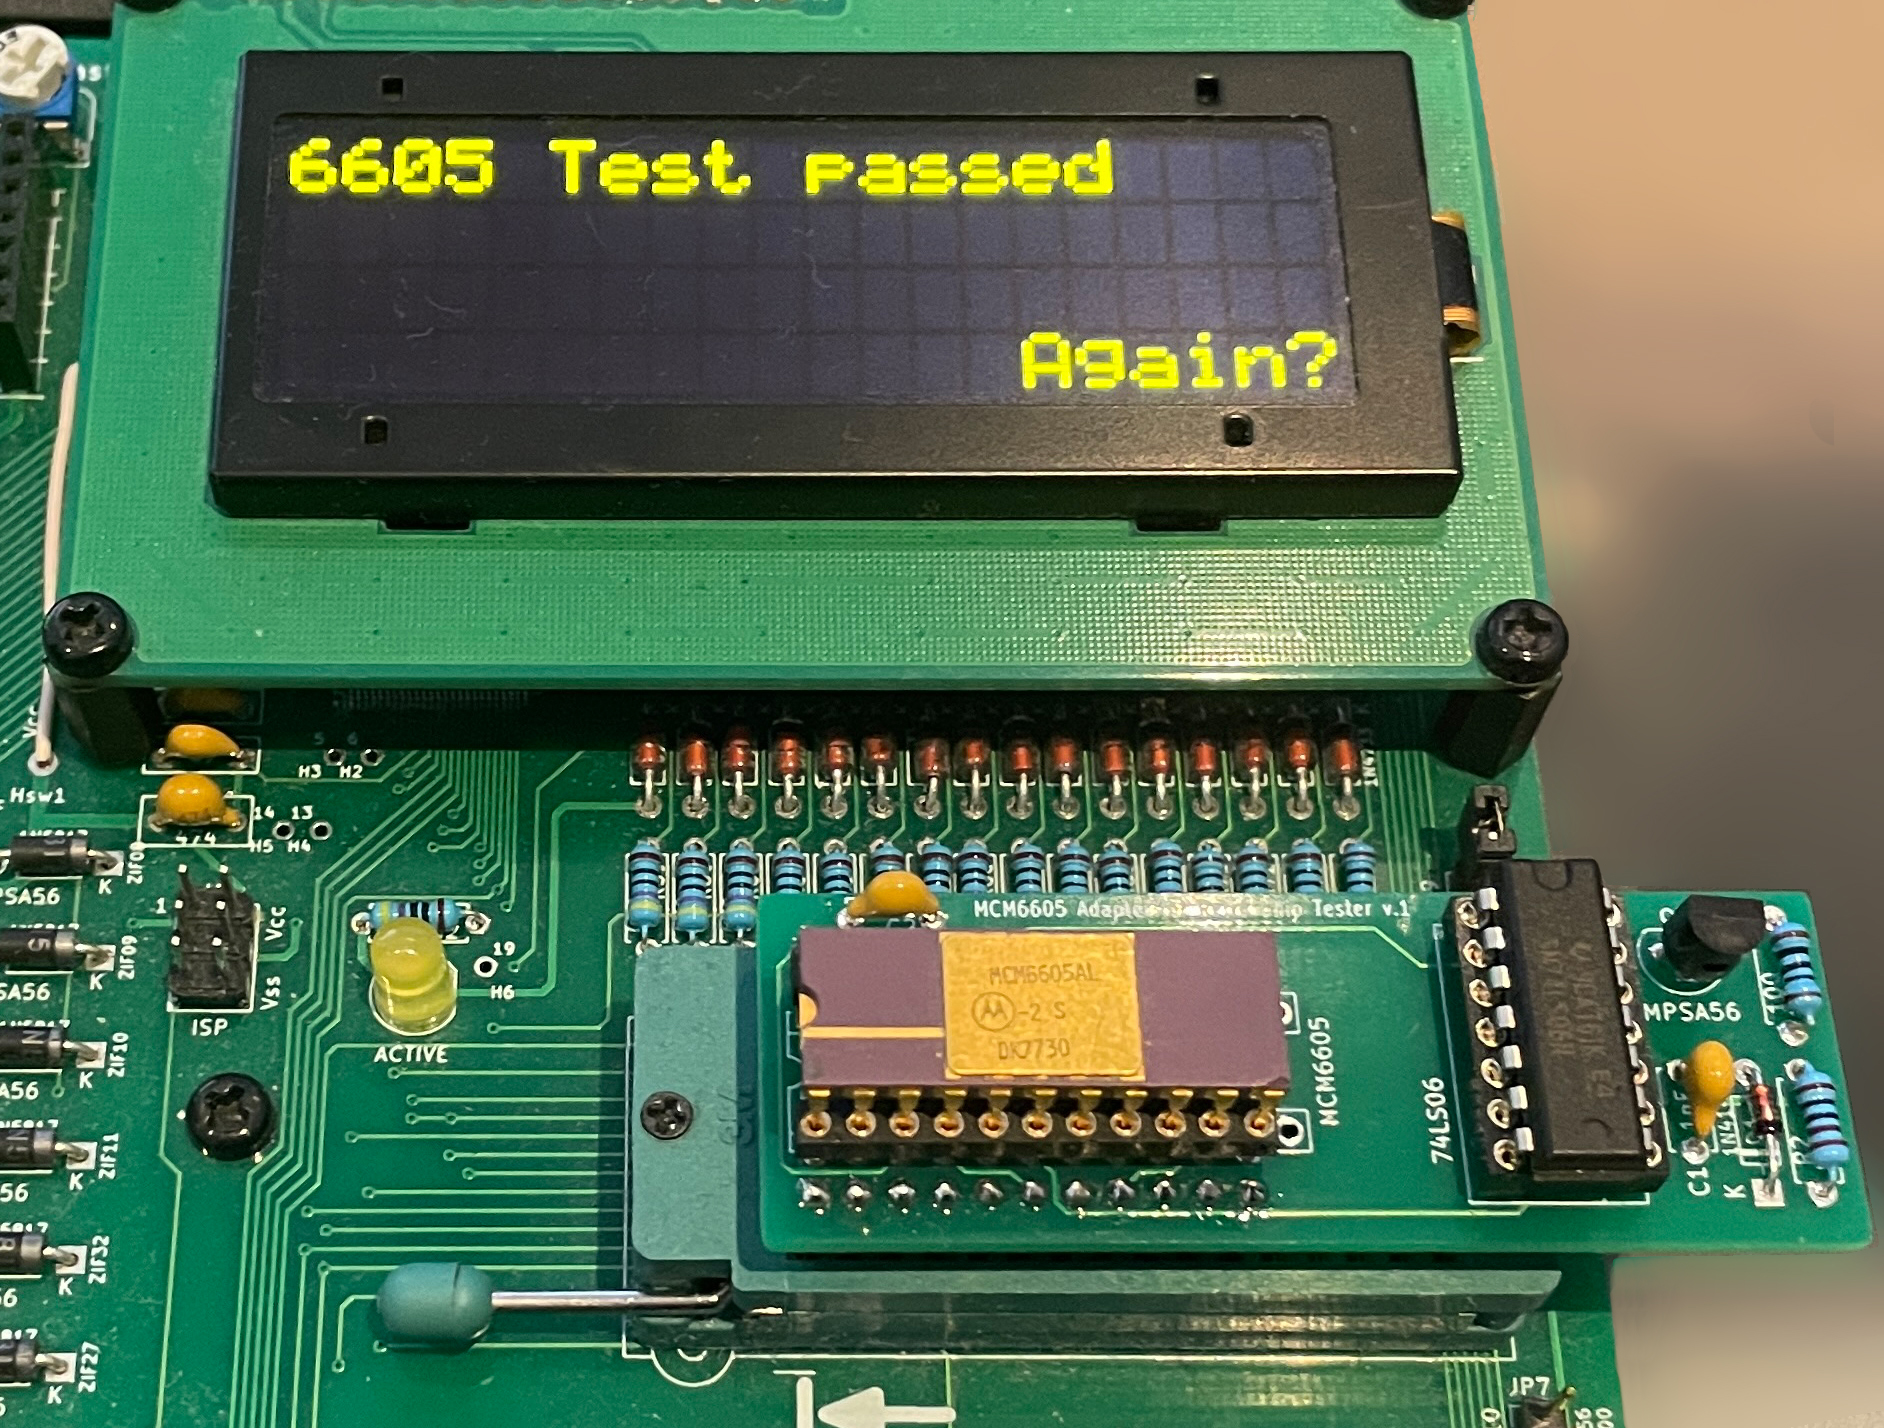 RCT testet Motorola MCM6605